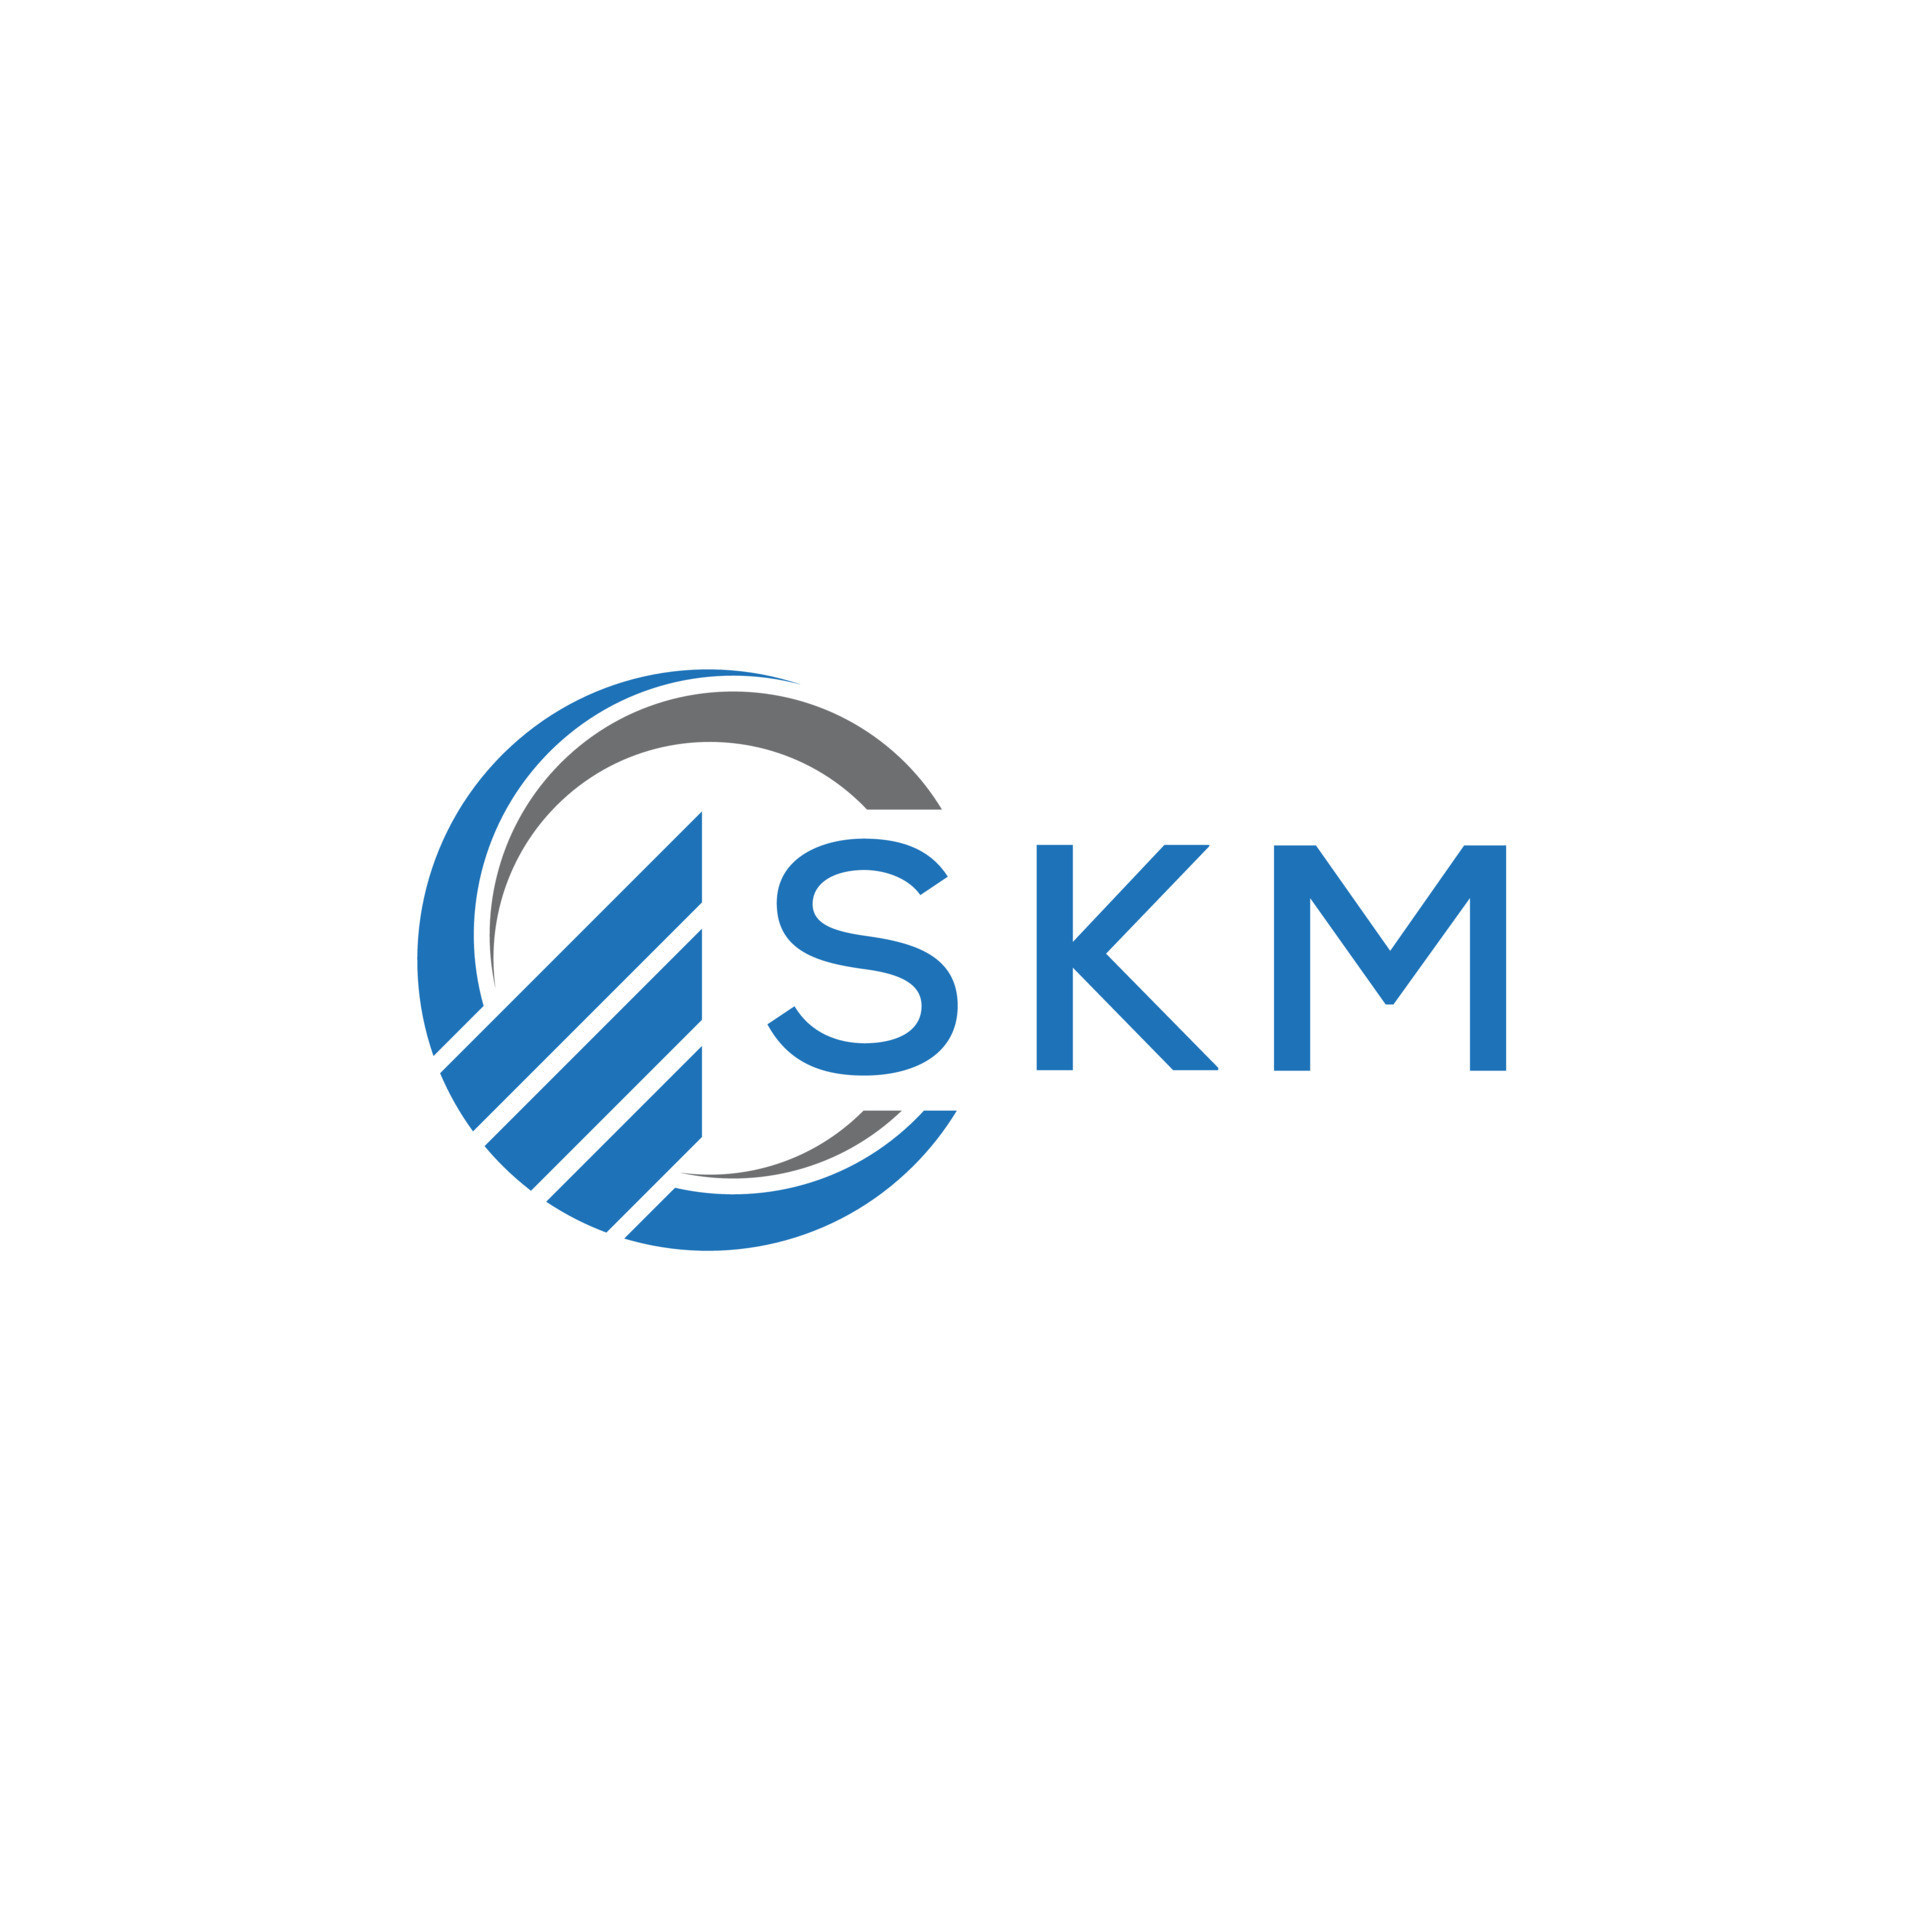 Aggregate more than 64 skm logo design super hot - ceg.edu.vn